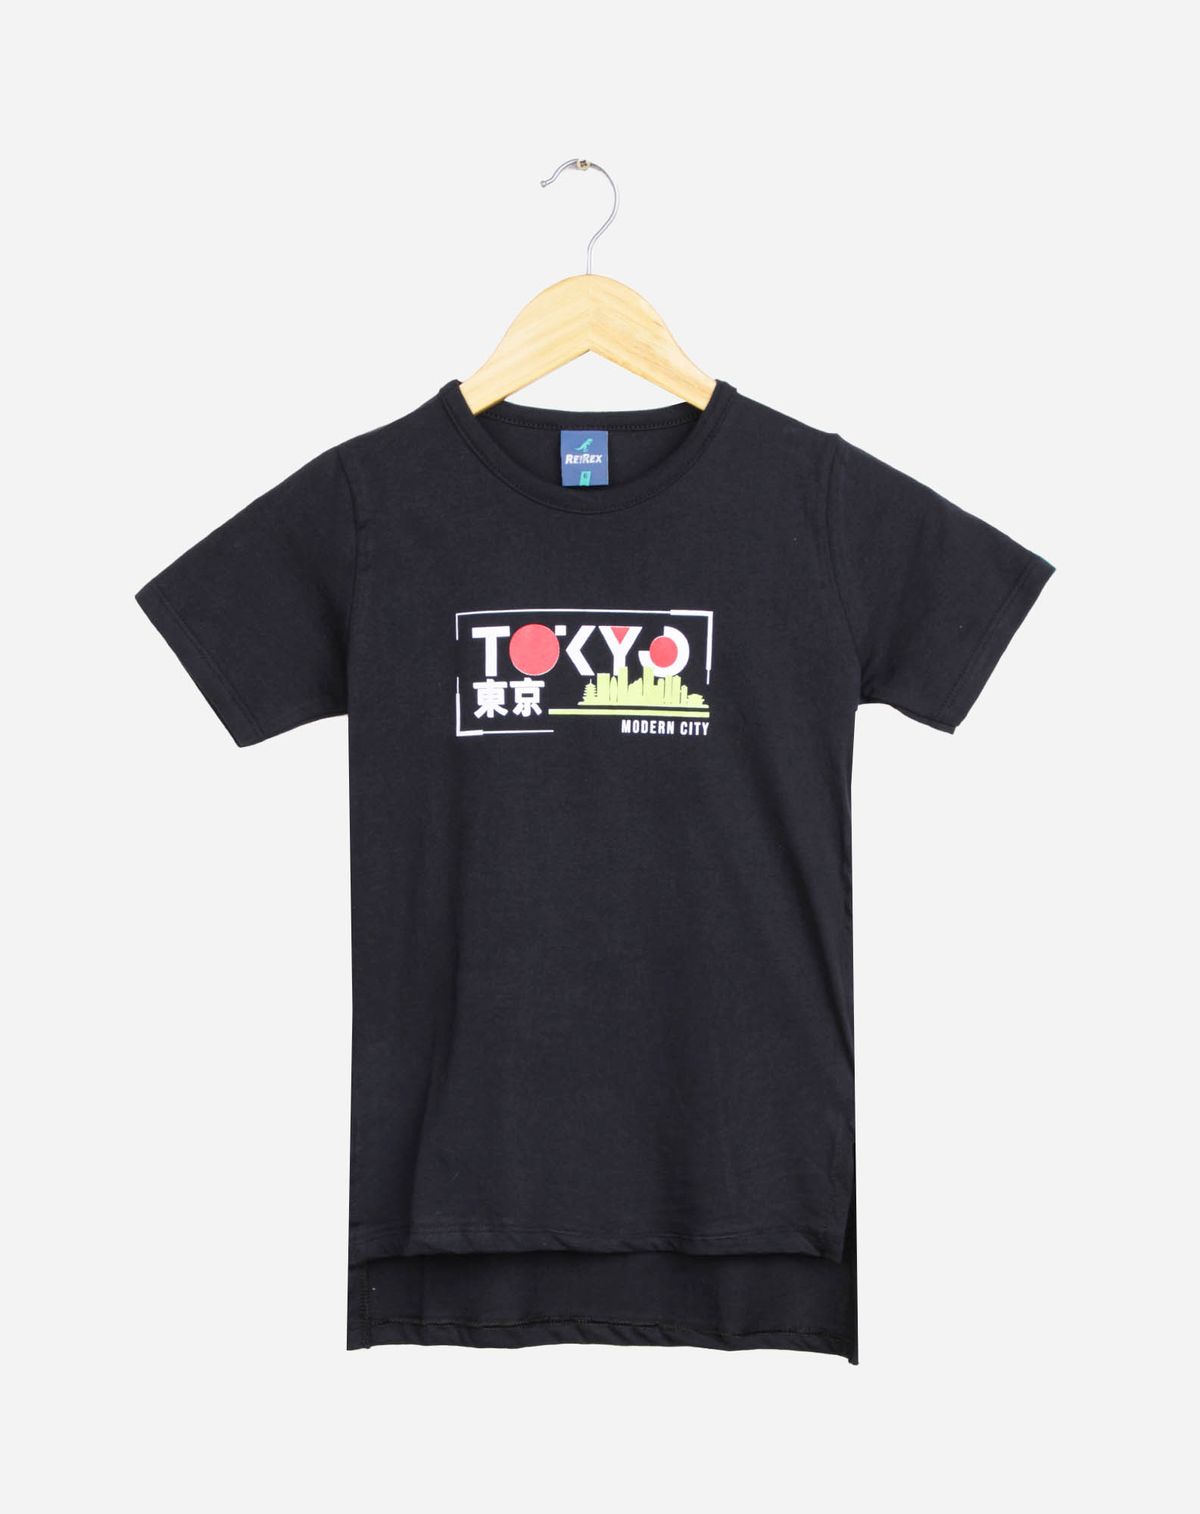 682462004-camiseta-infantil-menino-manga-curta-estampa-toquio-preto-10-346